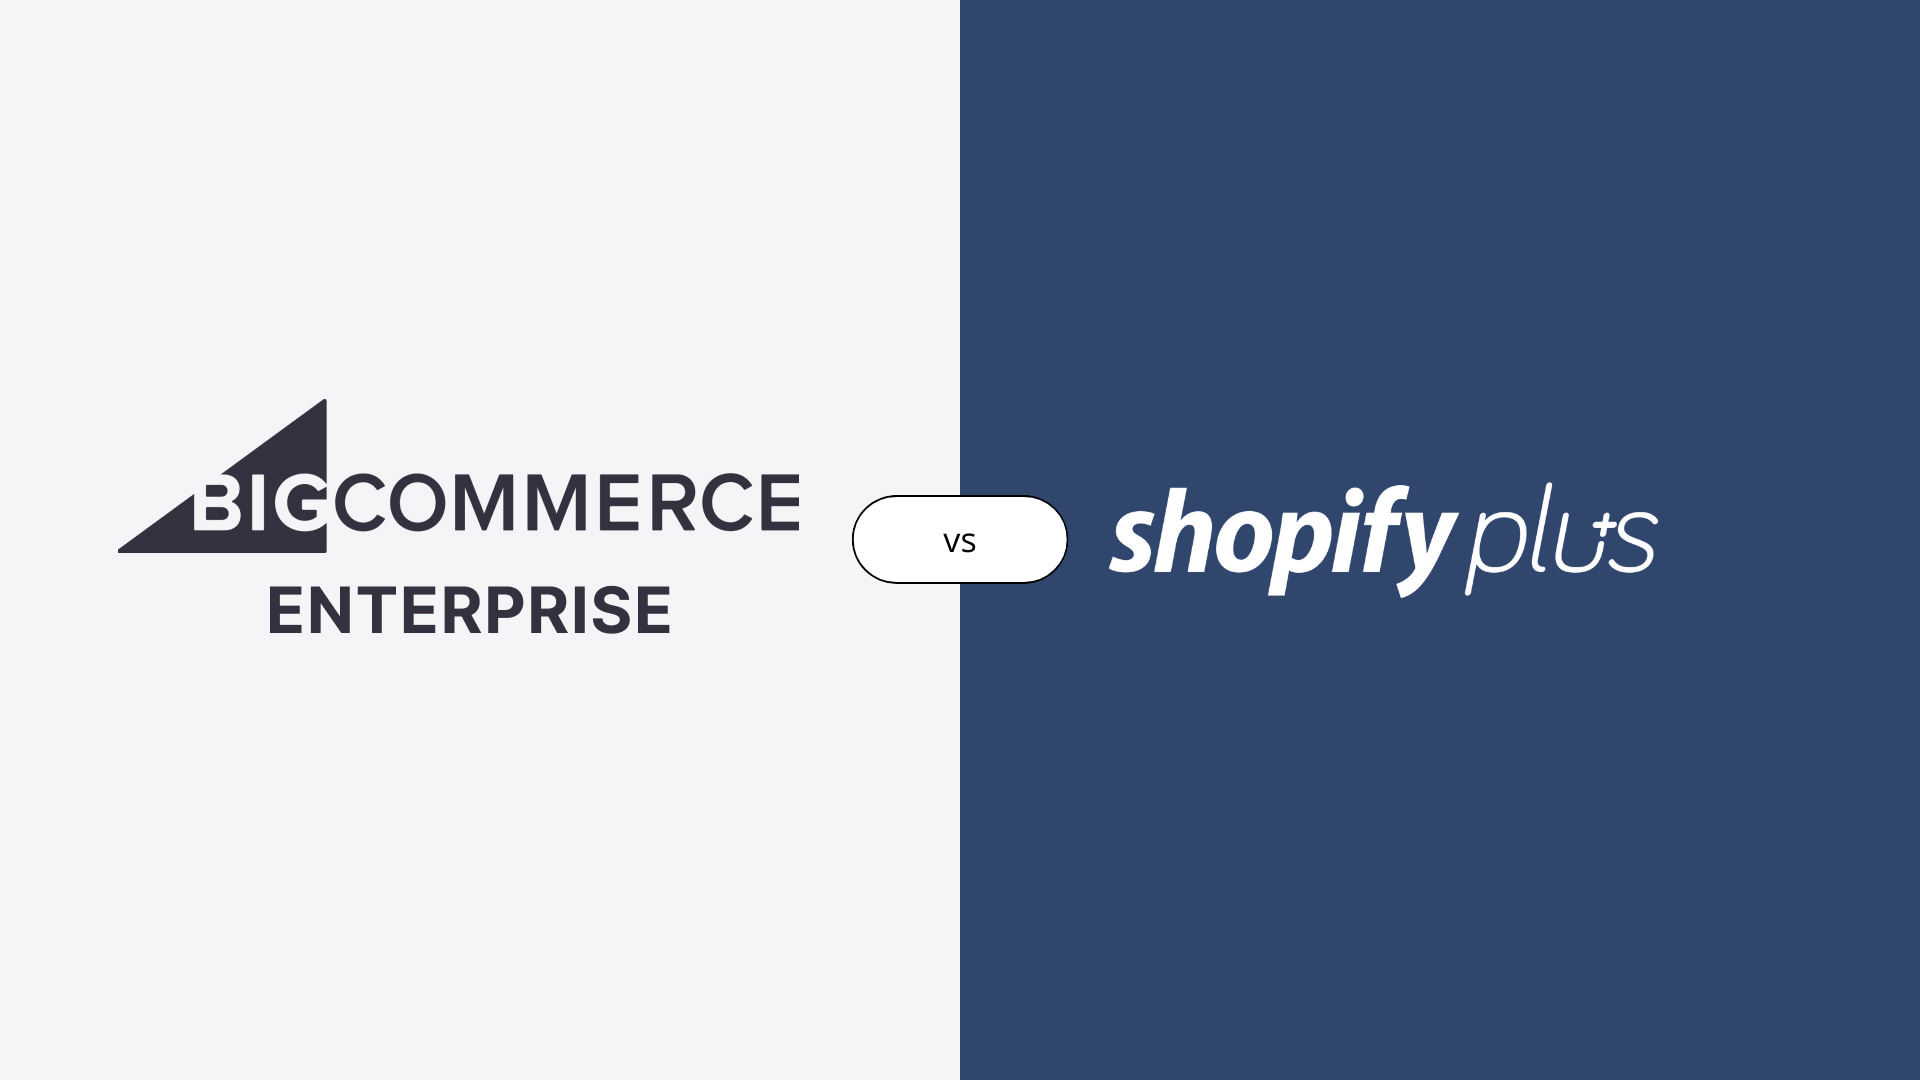 Shopify Plus vs. Bigcommerce Enterprise: Welche Plattform ist besser für Ihr Unternehmen?